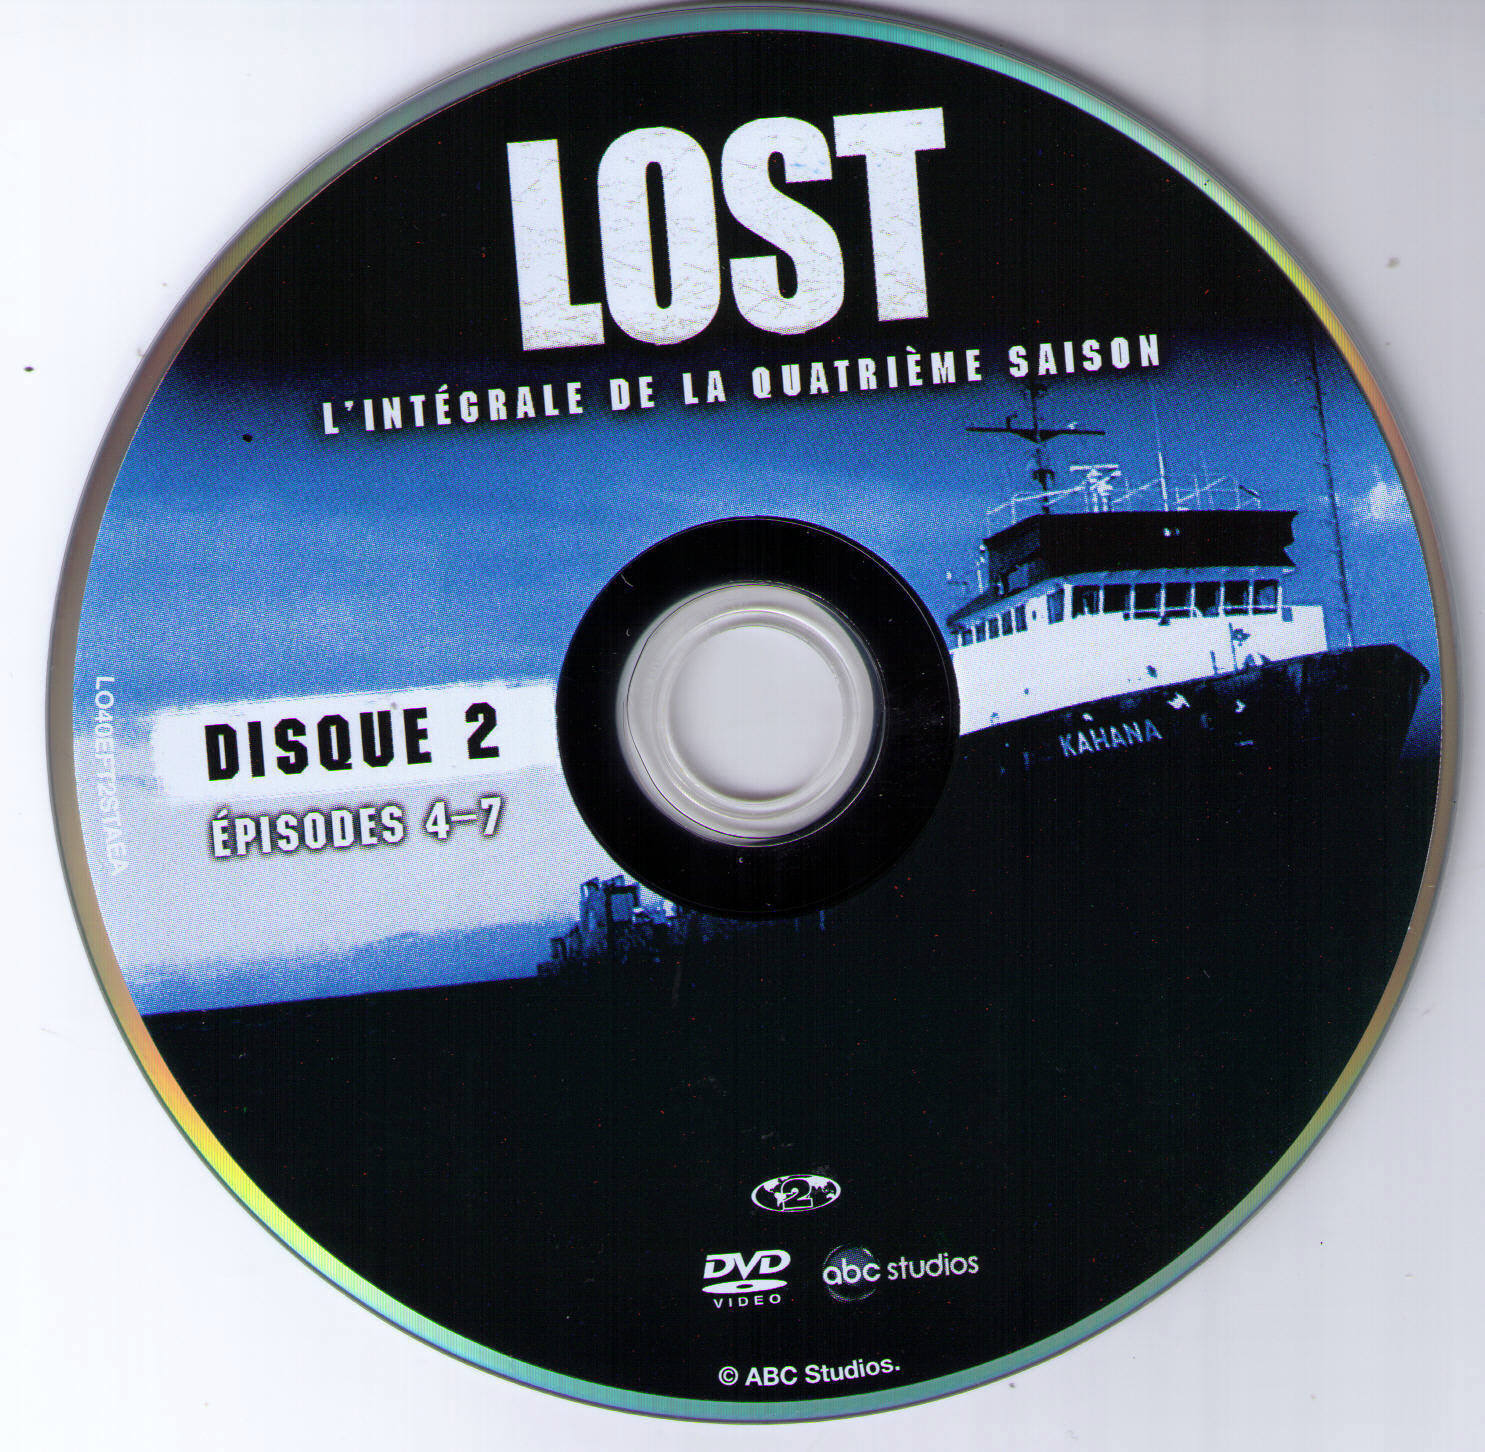 Lost Saison 4 DISC 2